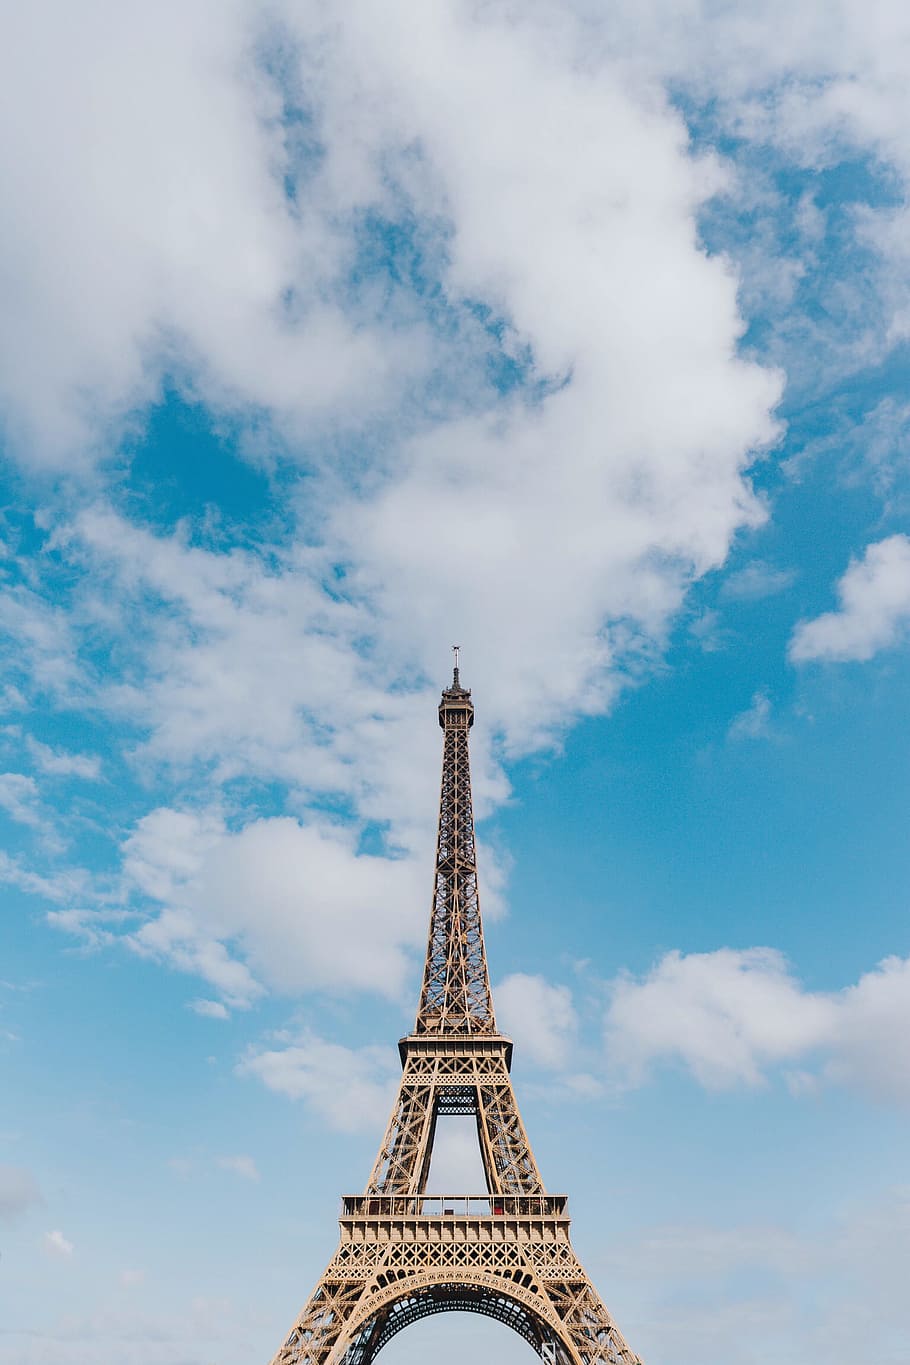 HD wallpaper: Eiffel Tower, Paris, cloud, travel, air, inspirational, blue  sky | Wallpaper Flare